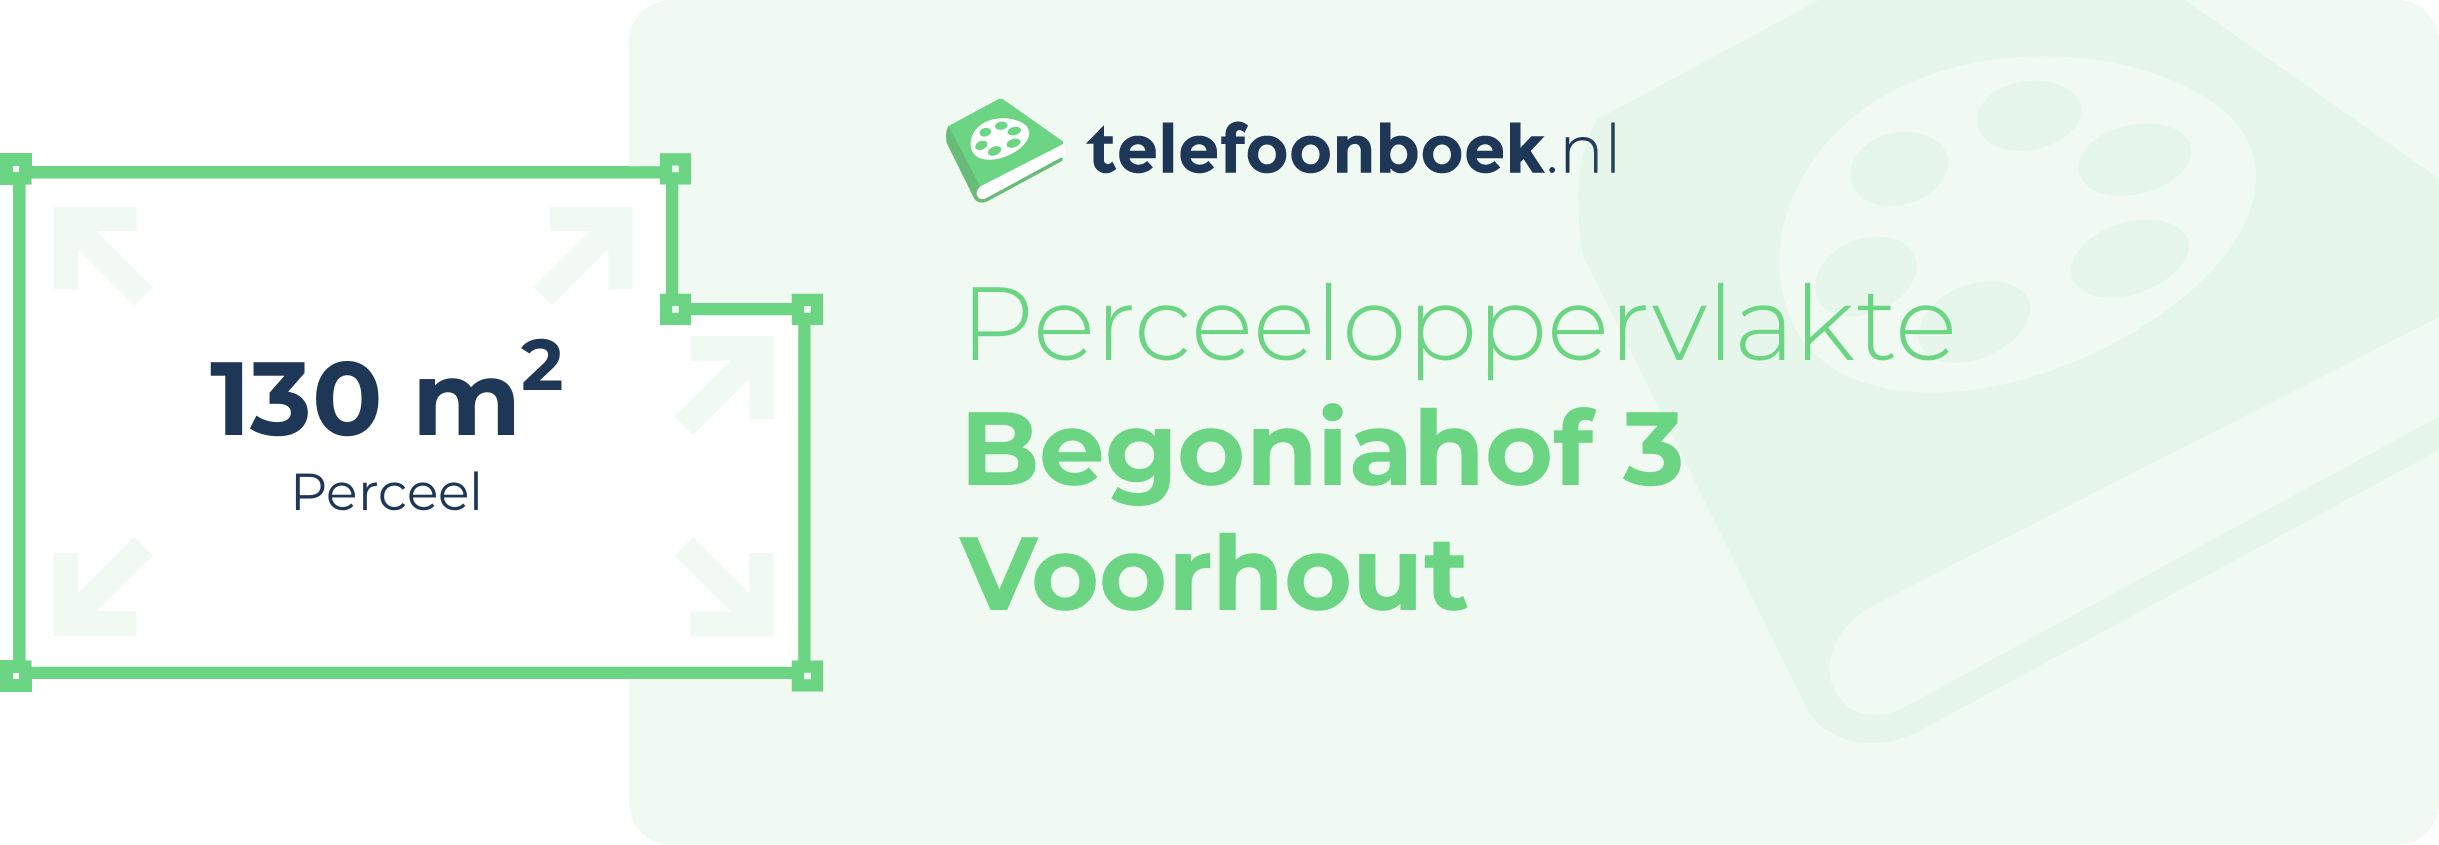 Perceeloppervlakte Begoniahof 3 Voorhout